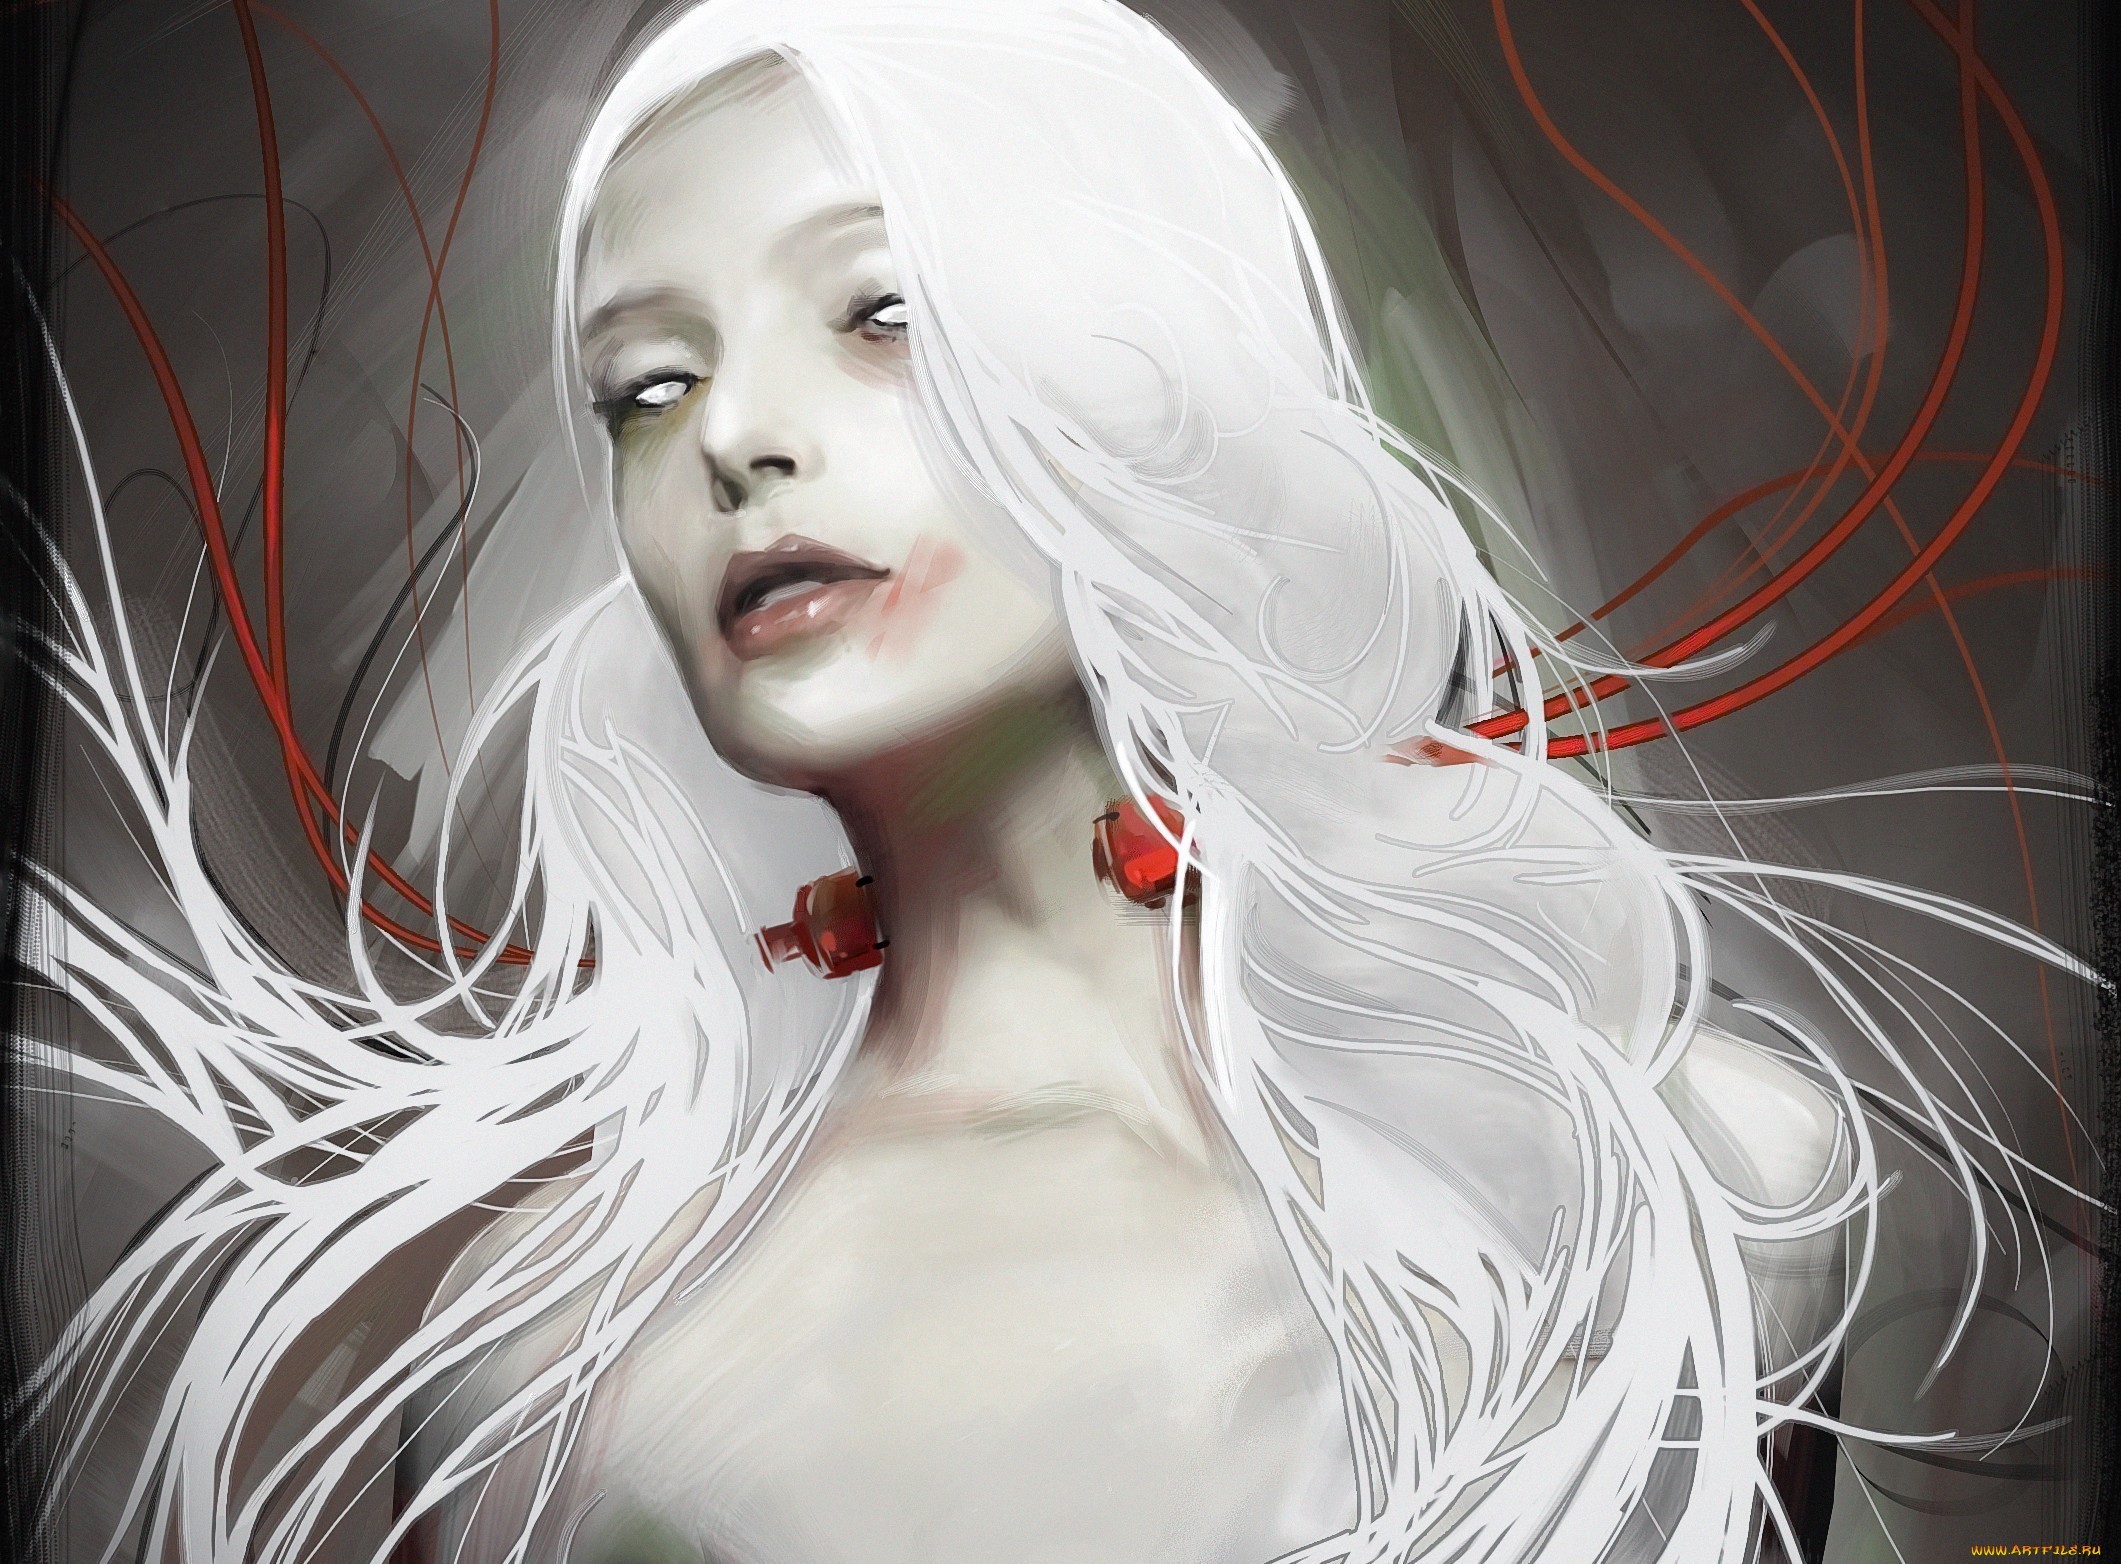 General 2121x1564 women dark artwork fantasy art white hair long hair face portrait fantasy girl